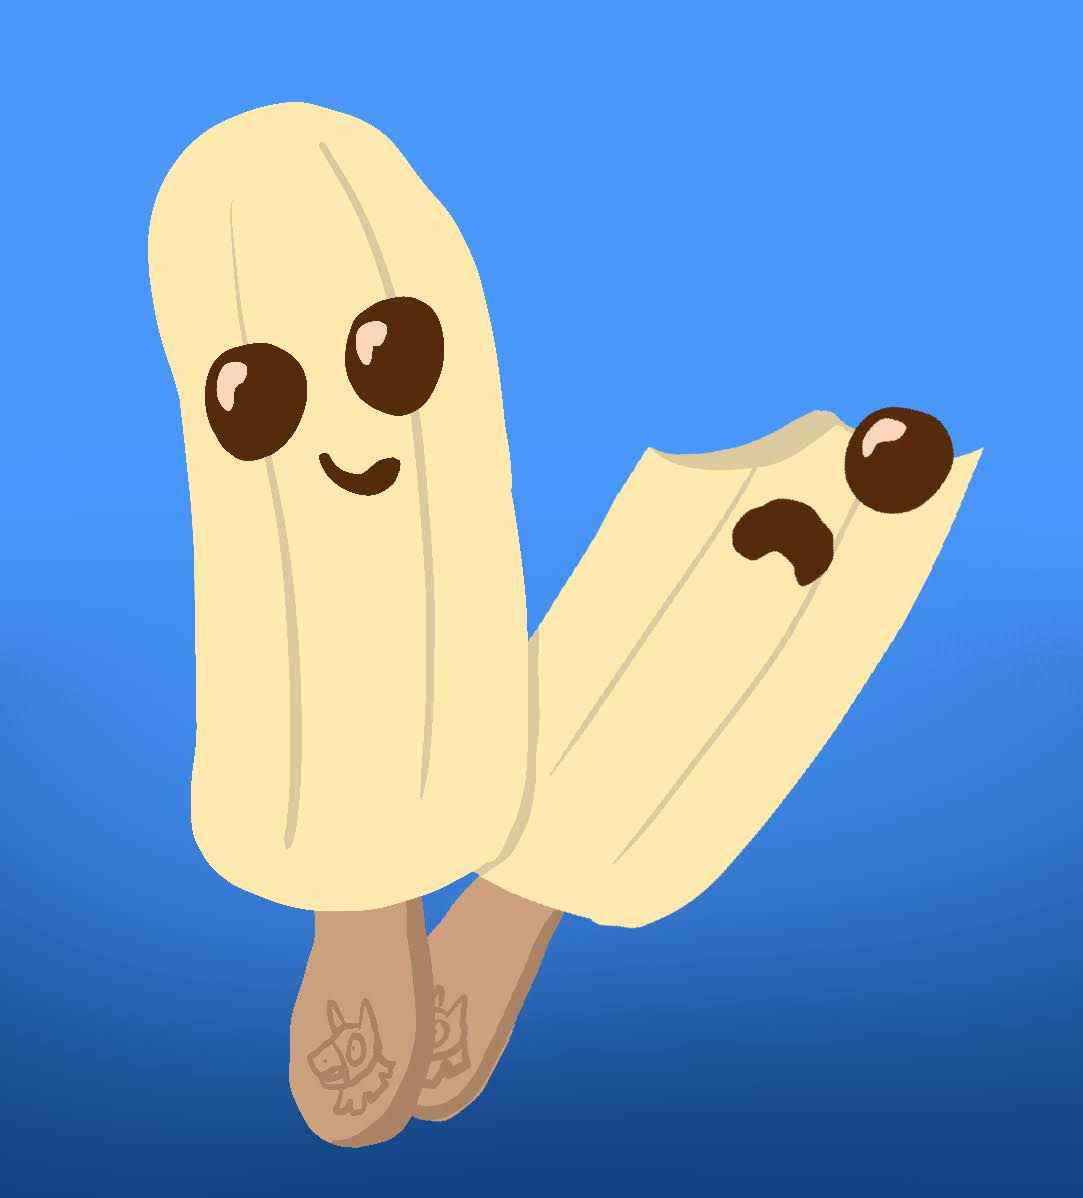 Une illustration du personnage de Fortnite Peely en tant que banane congelée